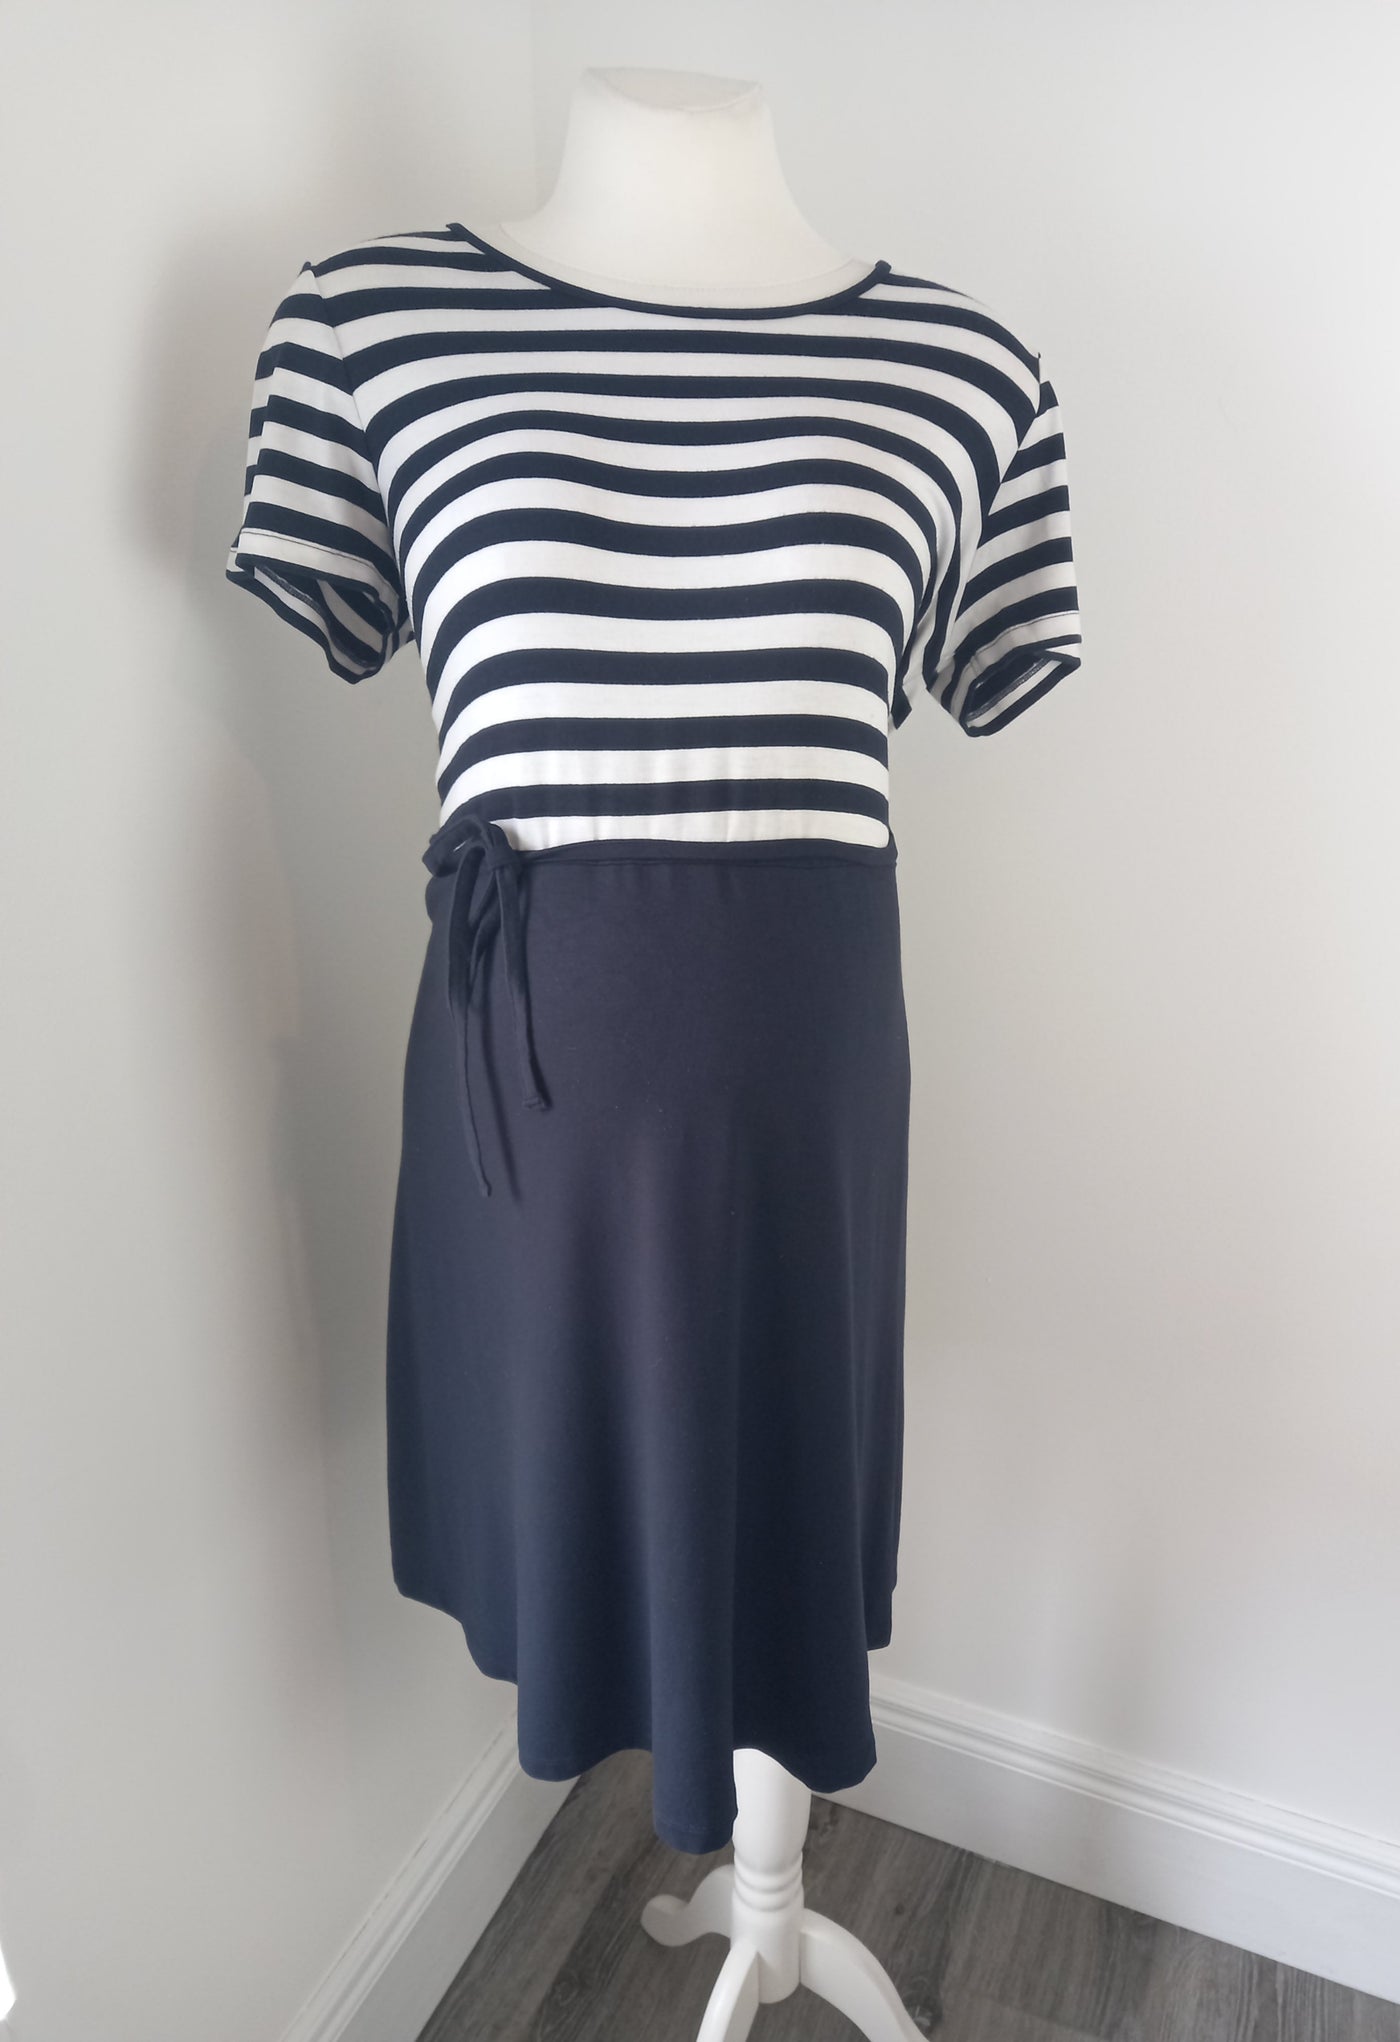 Next Maternity navy & white striped top jersey dress - Size 12